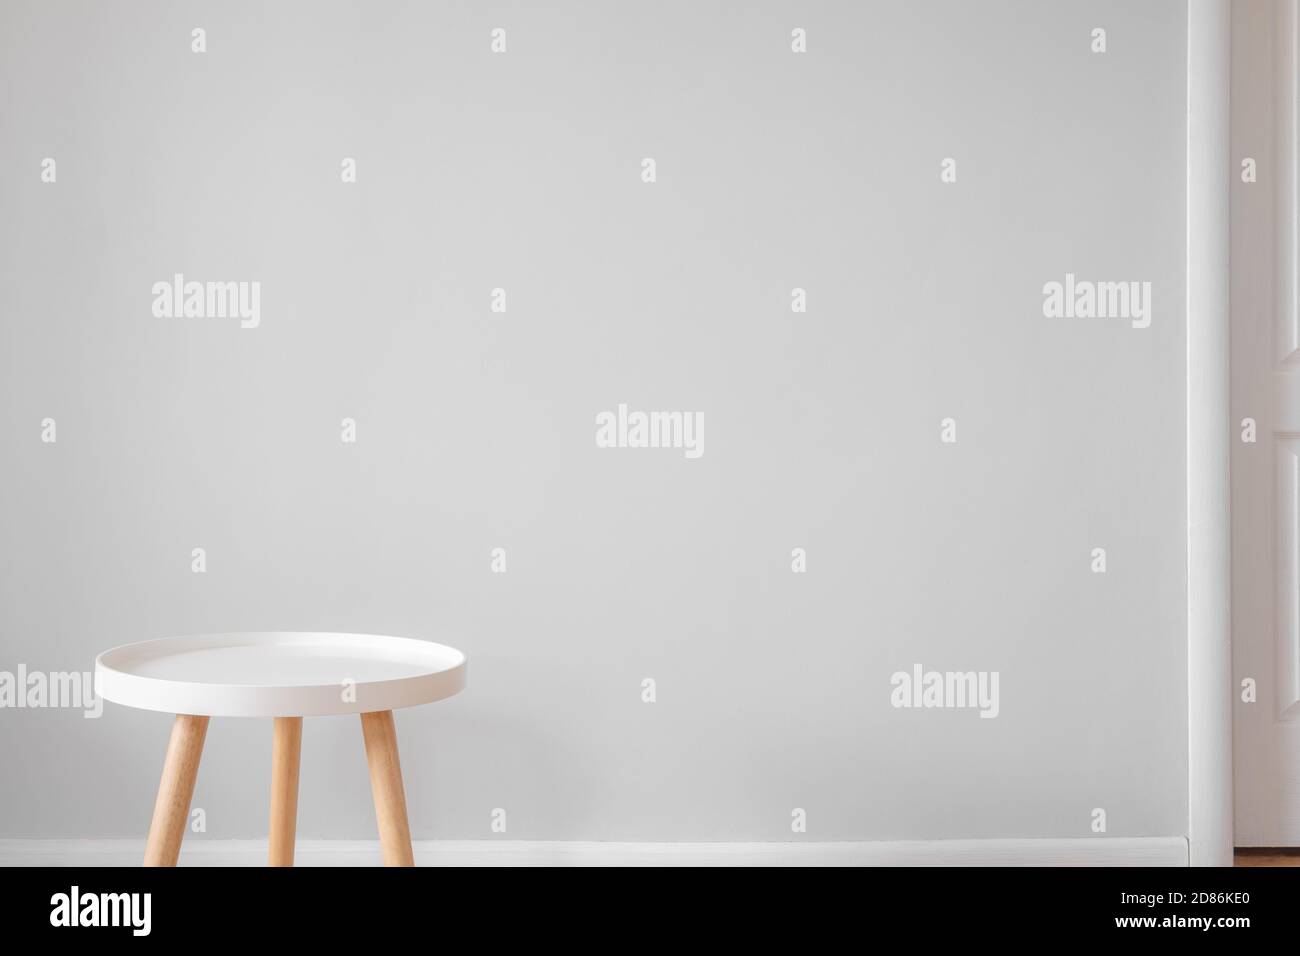 Leerer weißer Couchtisch vor einer grauen Wand in einem Zimmer. Skandinavischer Innendesign, Minimalismus im Haus, ruhiges Wohnkonzept Stockfoto